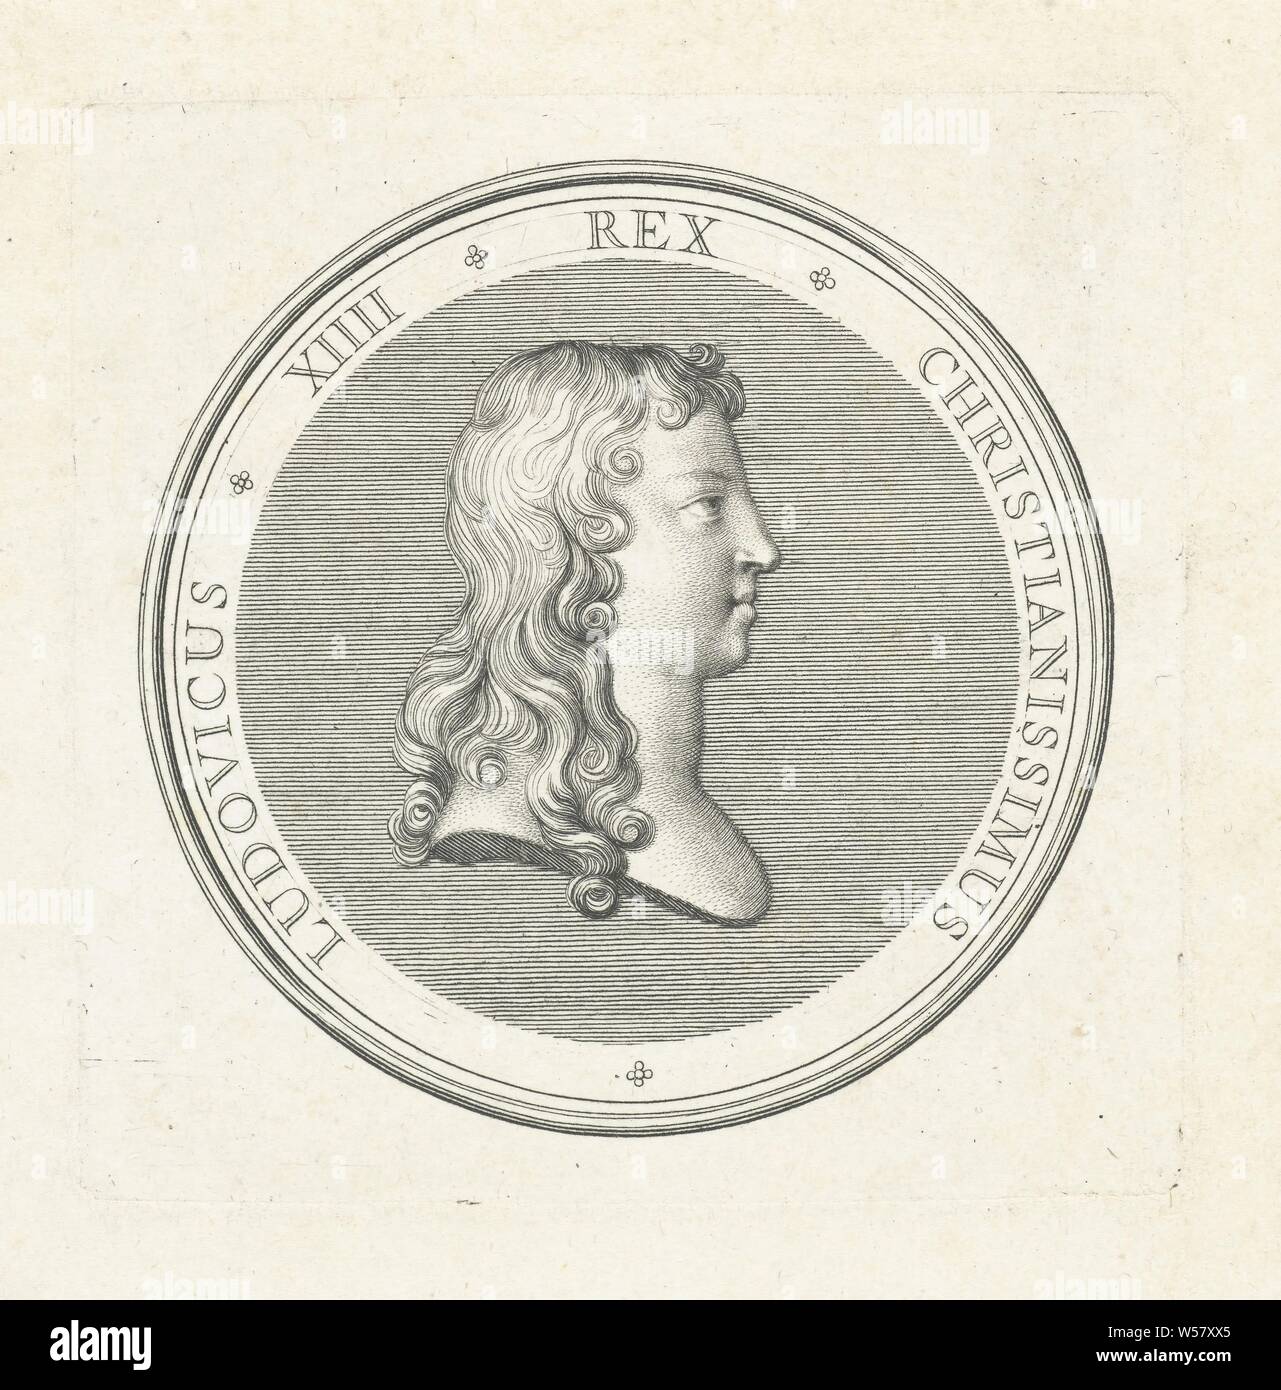 Médaille avec buste de Louis XIV, avant d'un buste avec profil et le profil de Louis XIV, publié pour la première fois à l'occasion de la régence de sa mère en 1643, Louis XIV (Roi de France), Gérard Edelinck, Paris, 1702, papier, gravure, h 83 mm × w 82 mm Banque D'Images